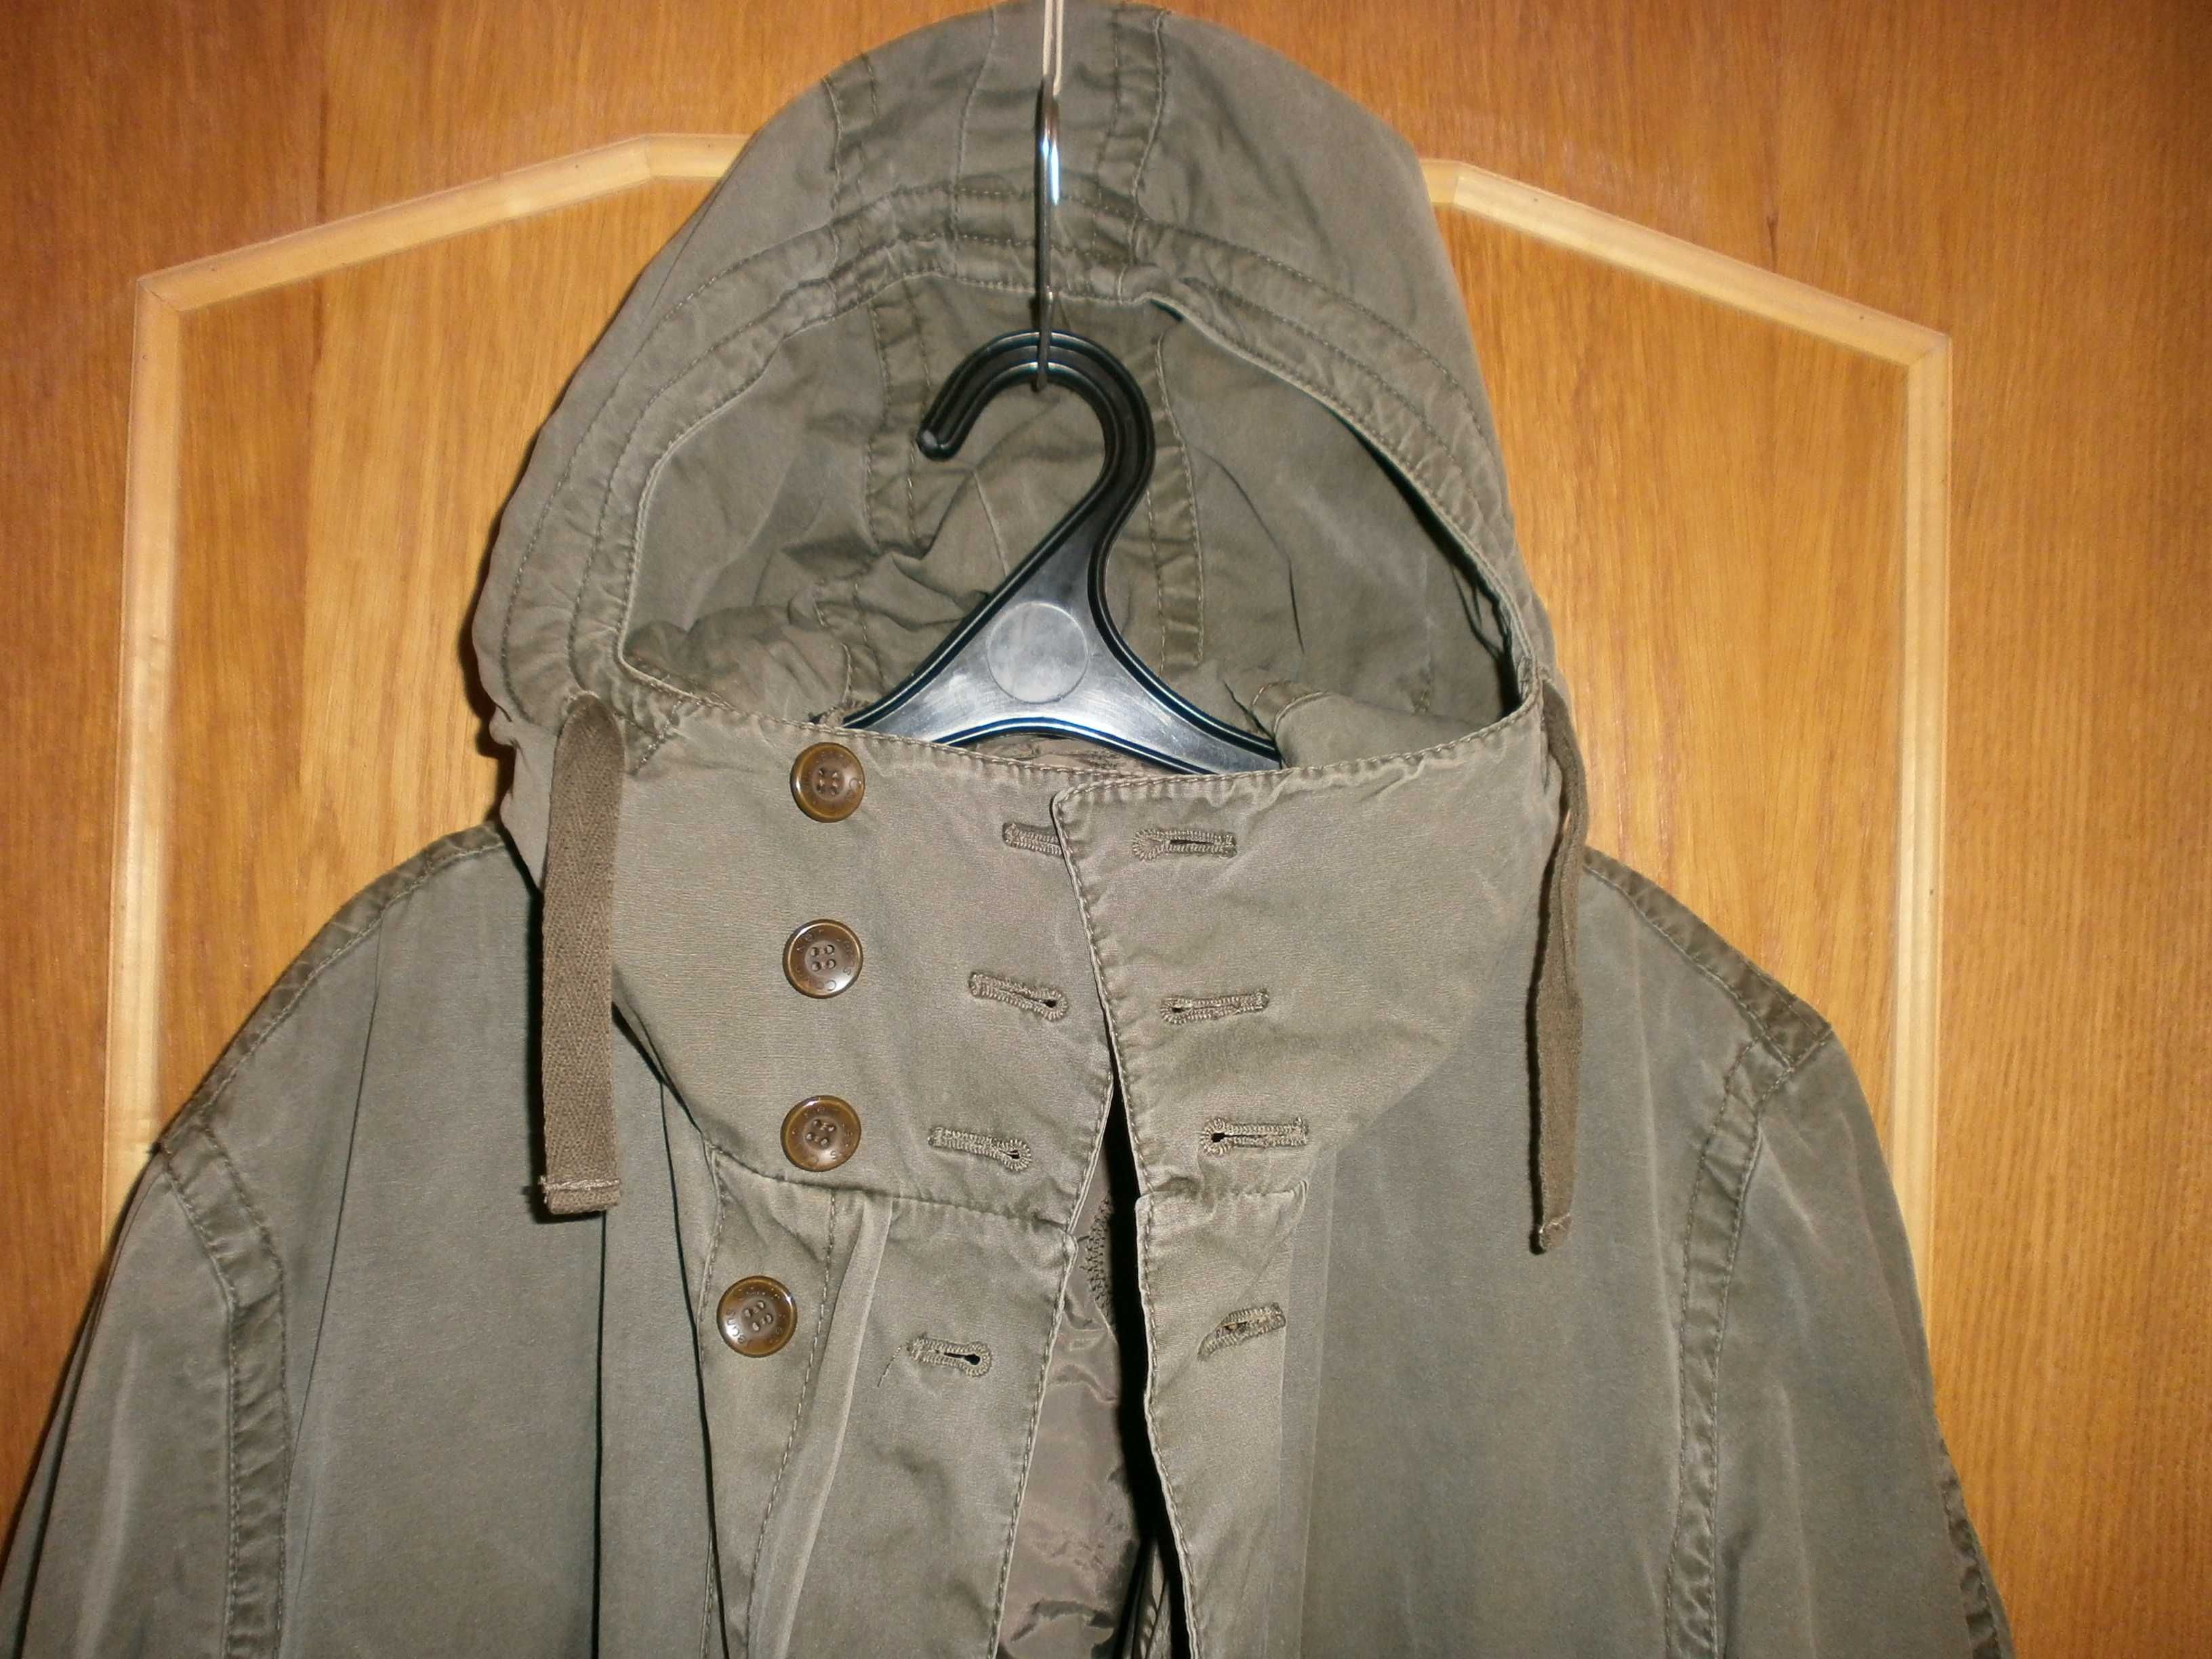 Куртка Kalvin Klein, олива, разм. L, наш 54-56. ПОГ-64 см. Демисезон